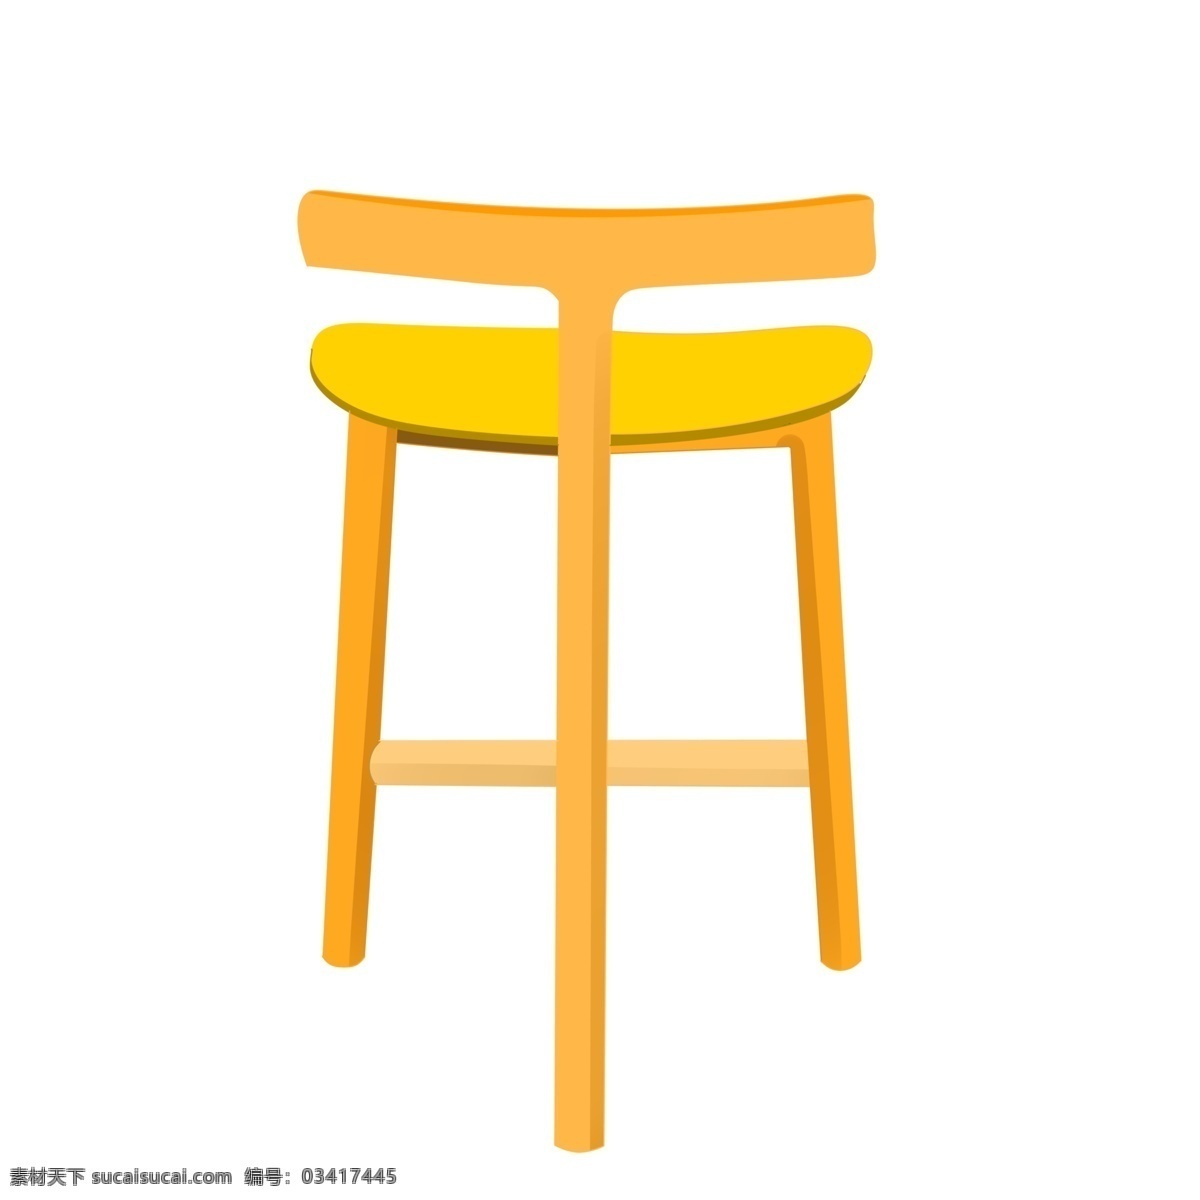 黄色 卡通 椅子 插画 黄色的椅子 桌椅 椅子插画 黄色桌椅 创意椅子插画 家具 精美的家具 家具插画